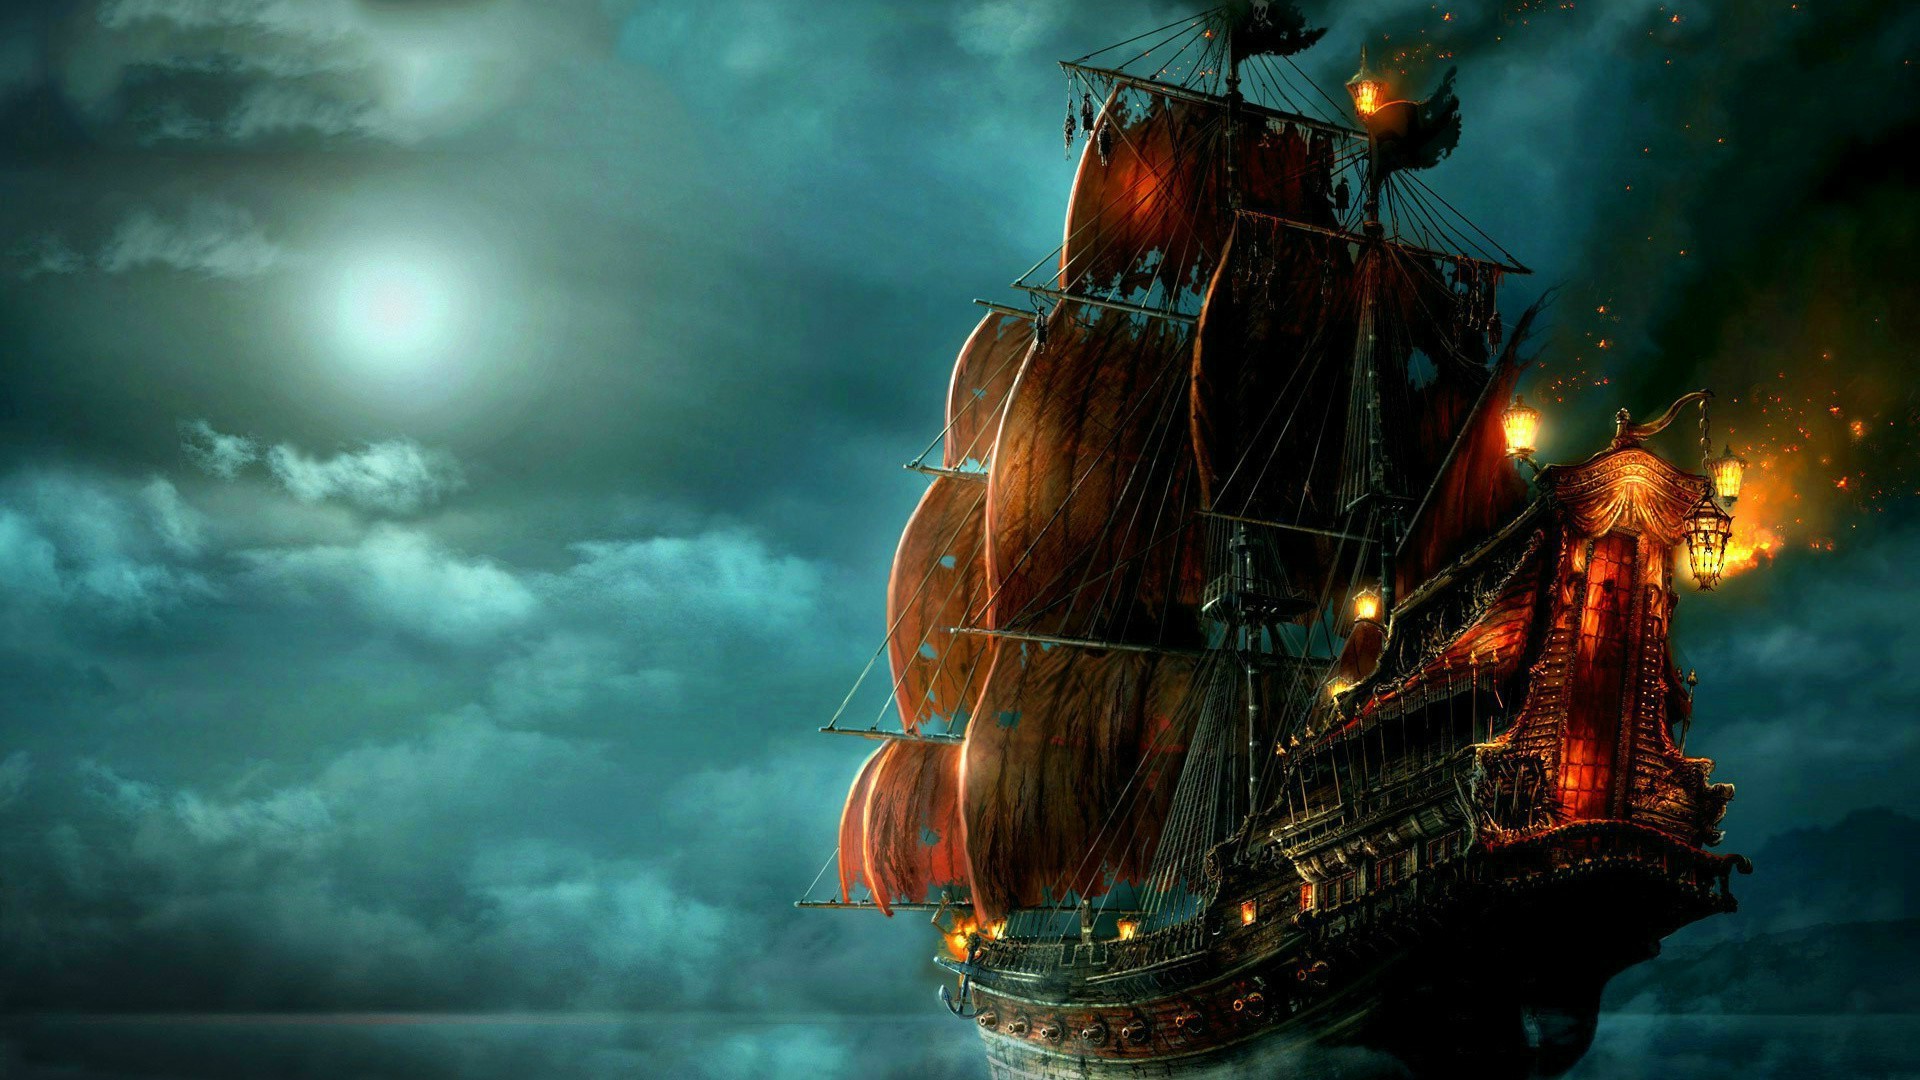 Pirates of the Caribbean: On Stranger Tides Art